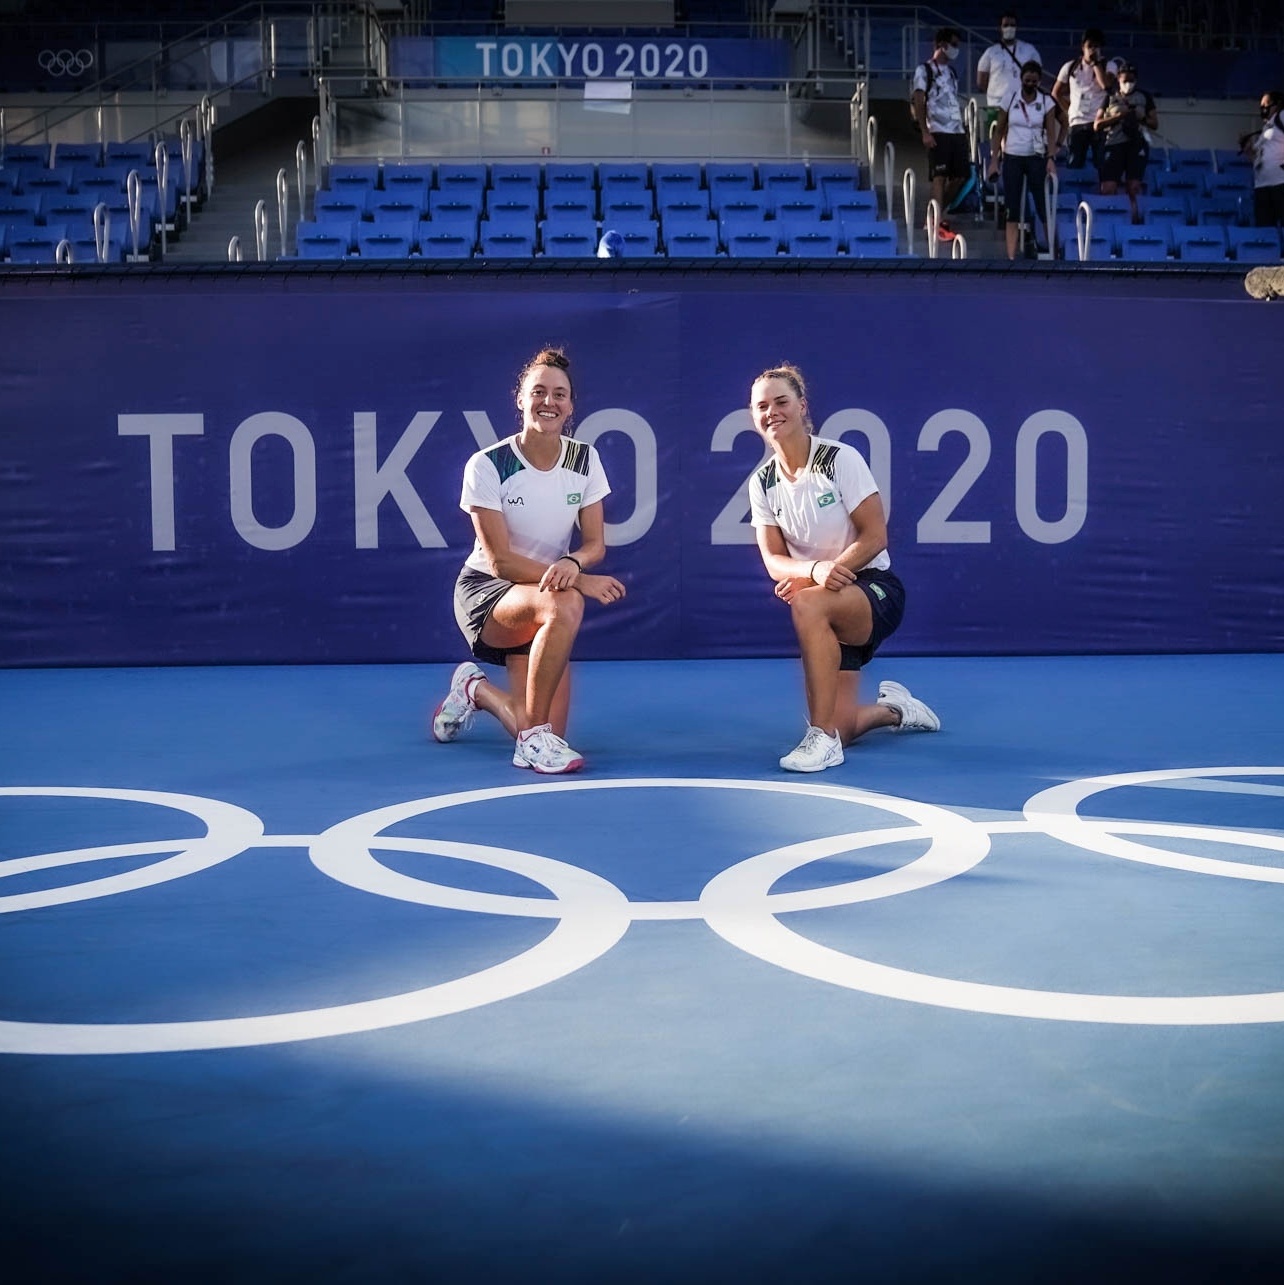 Jogos Olímpicos Tóquio 2020: Em busca do ouro inédito, Marta e